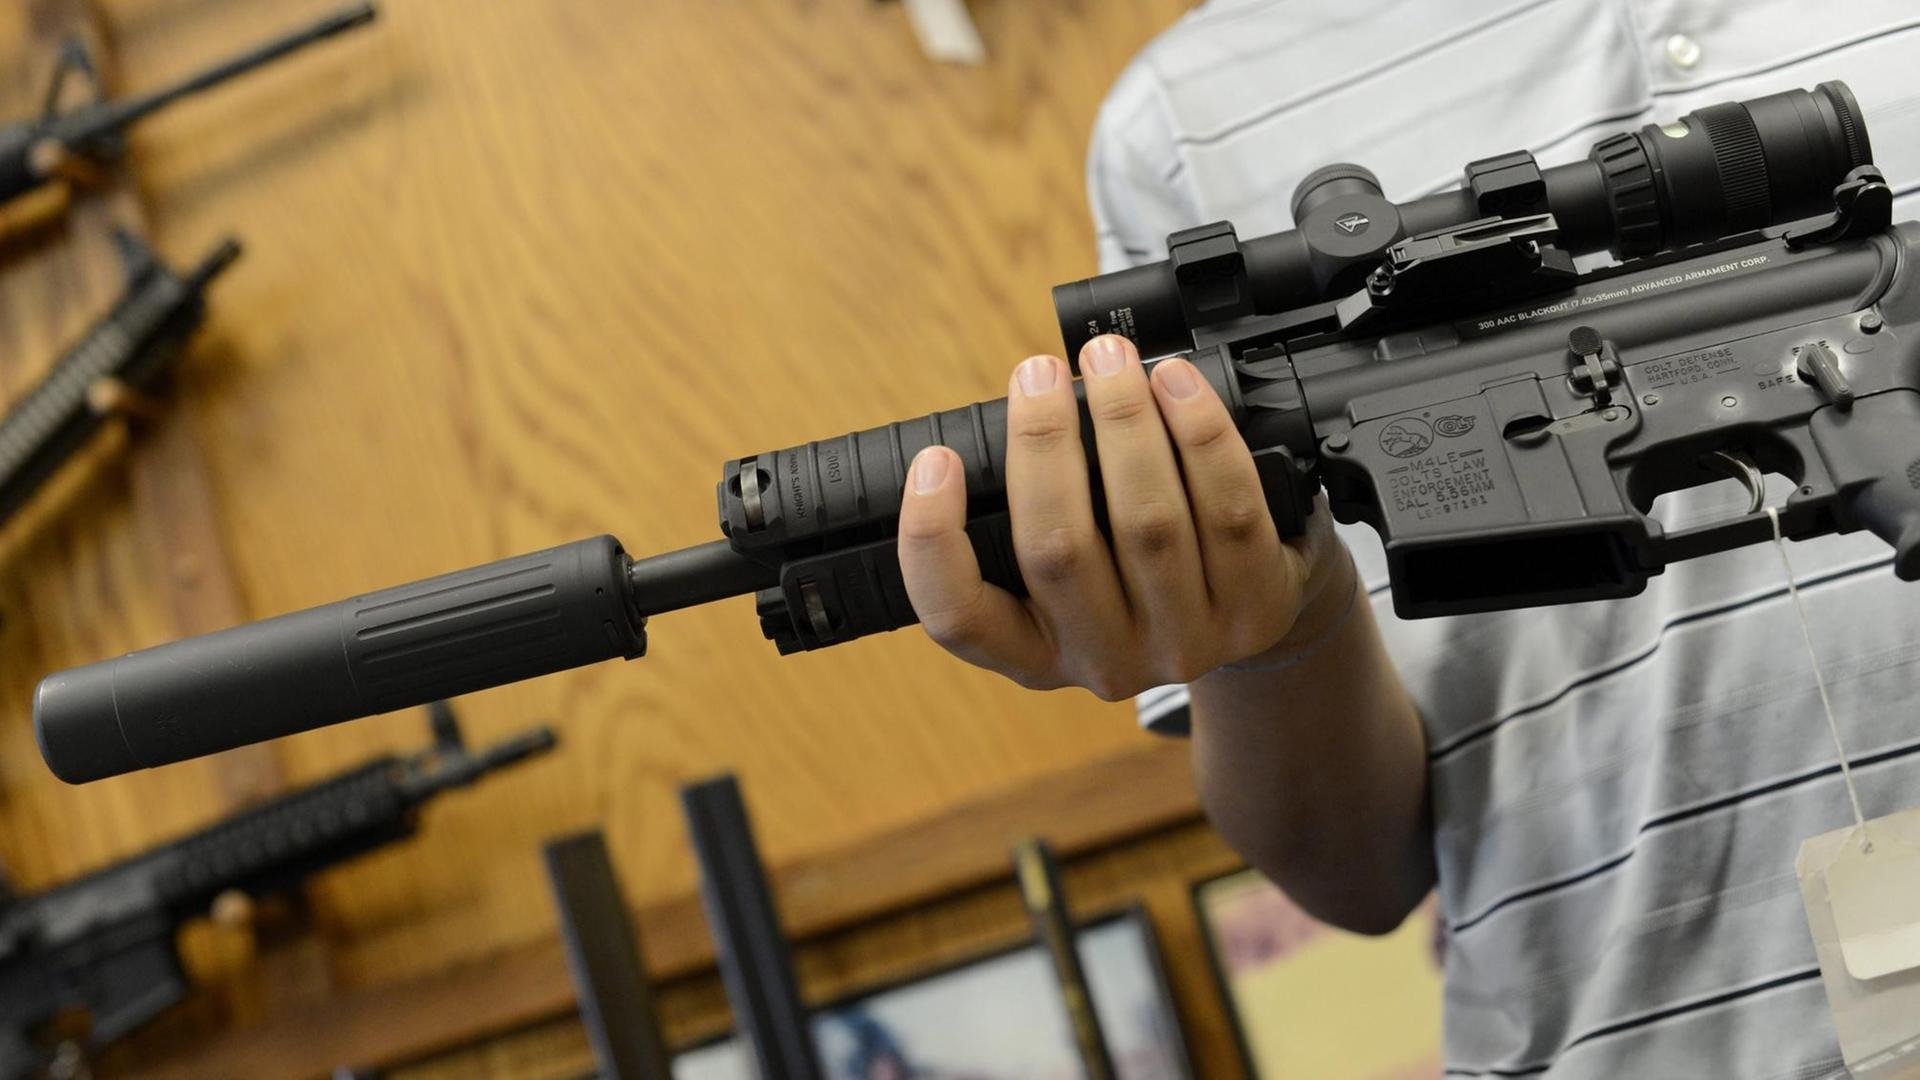 Ein automatisches Gewehr des Typs AR-15 vom Hersteller Colt wird in Atlanta in einem Waffengeschäft gezeigt.